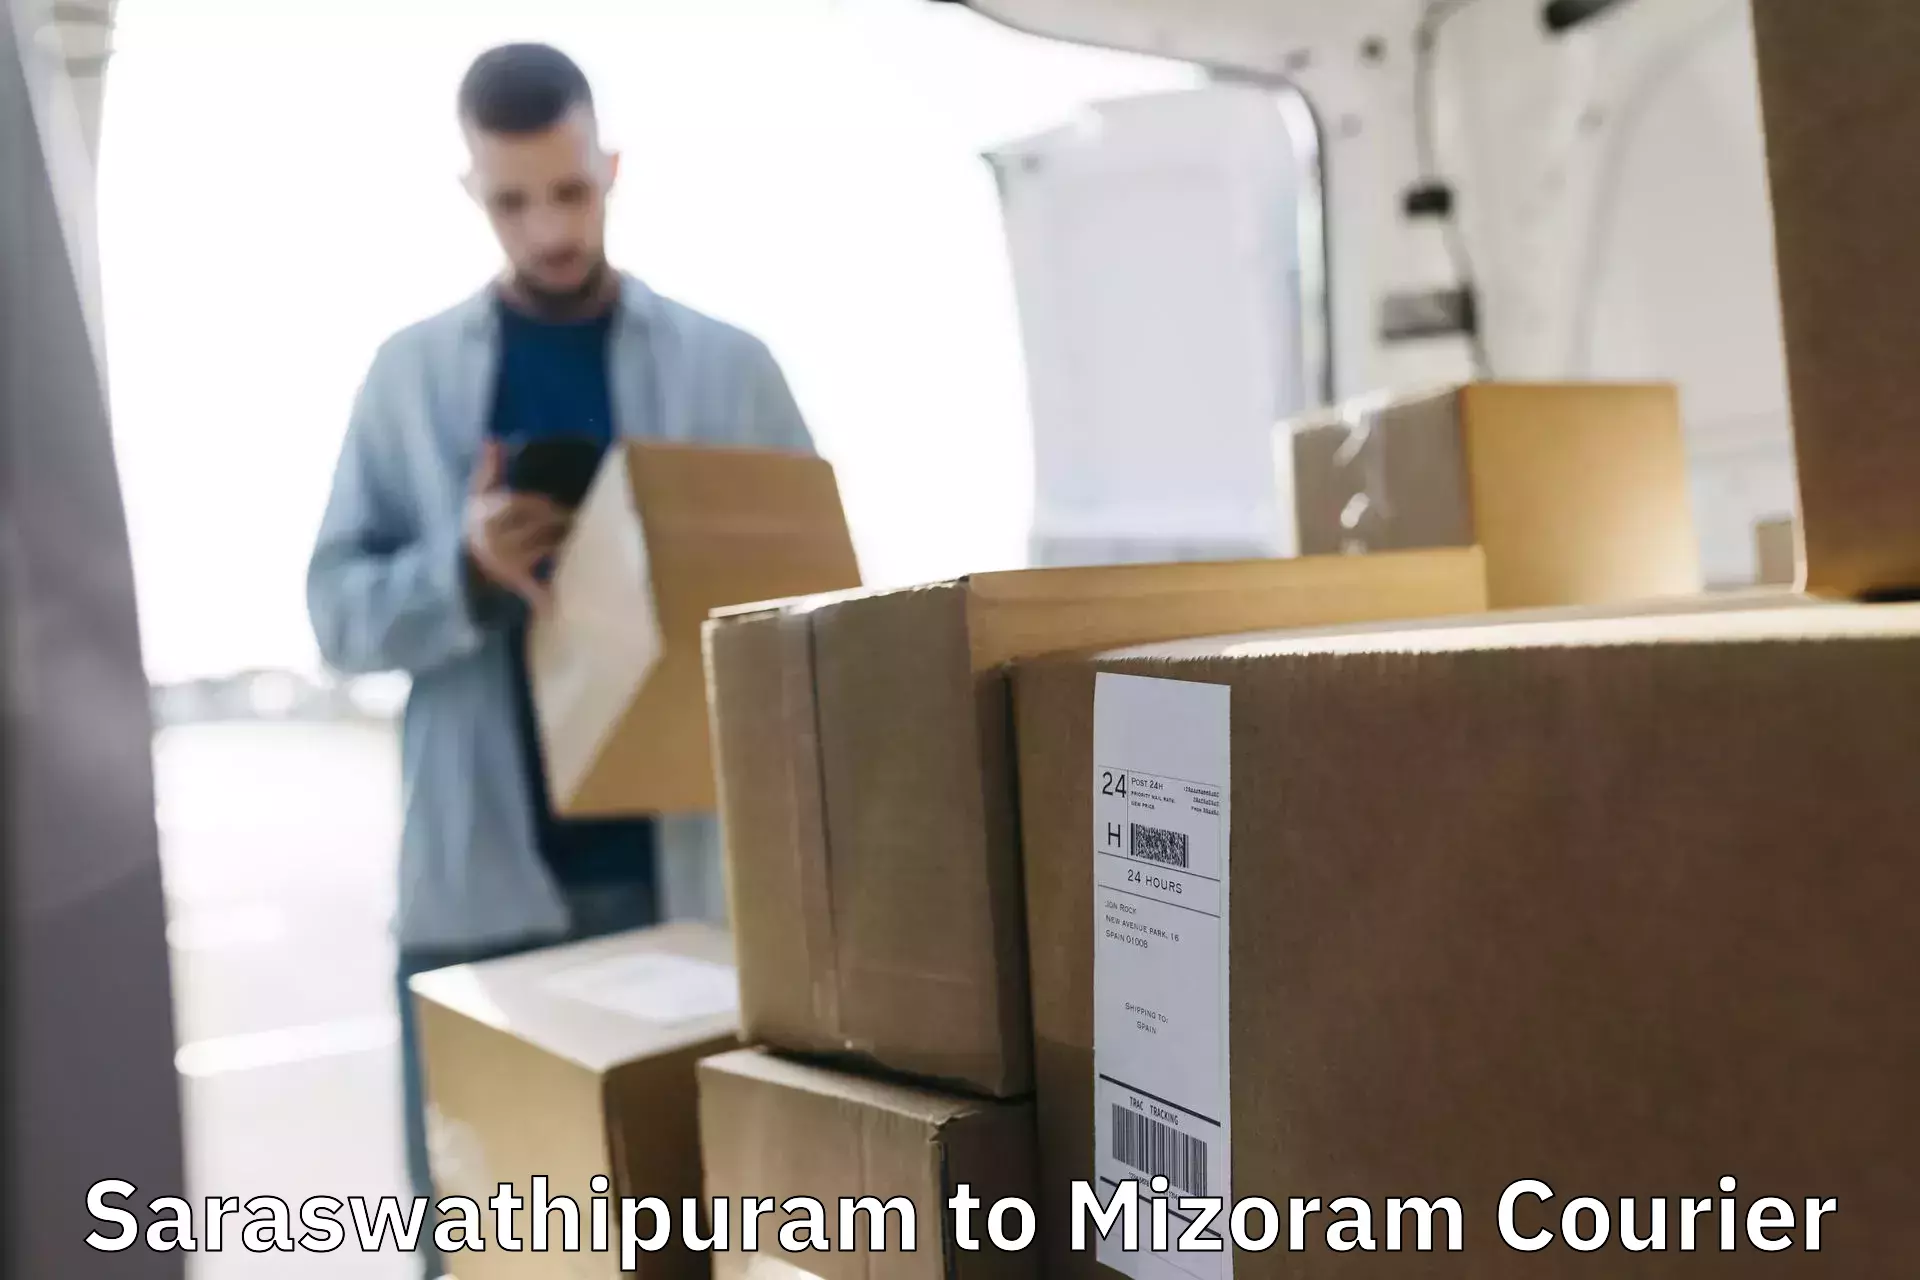 Reliable parcel services Saraswathipuram to Thenzawl